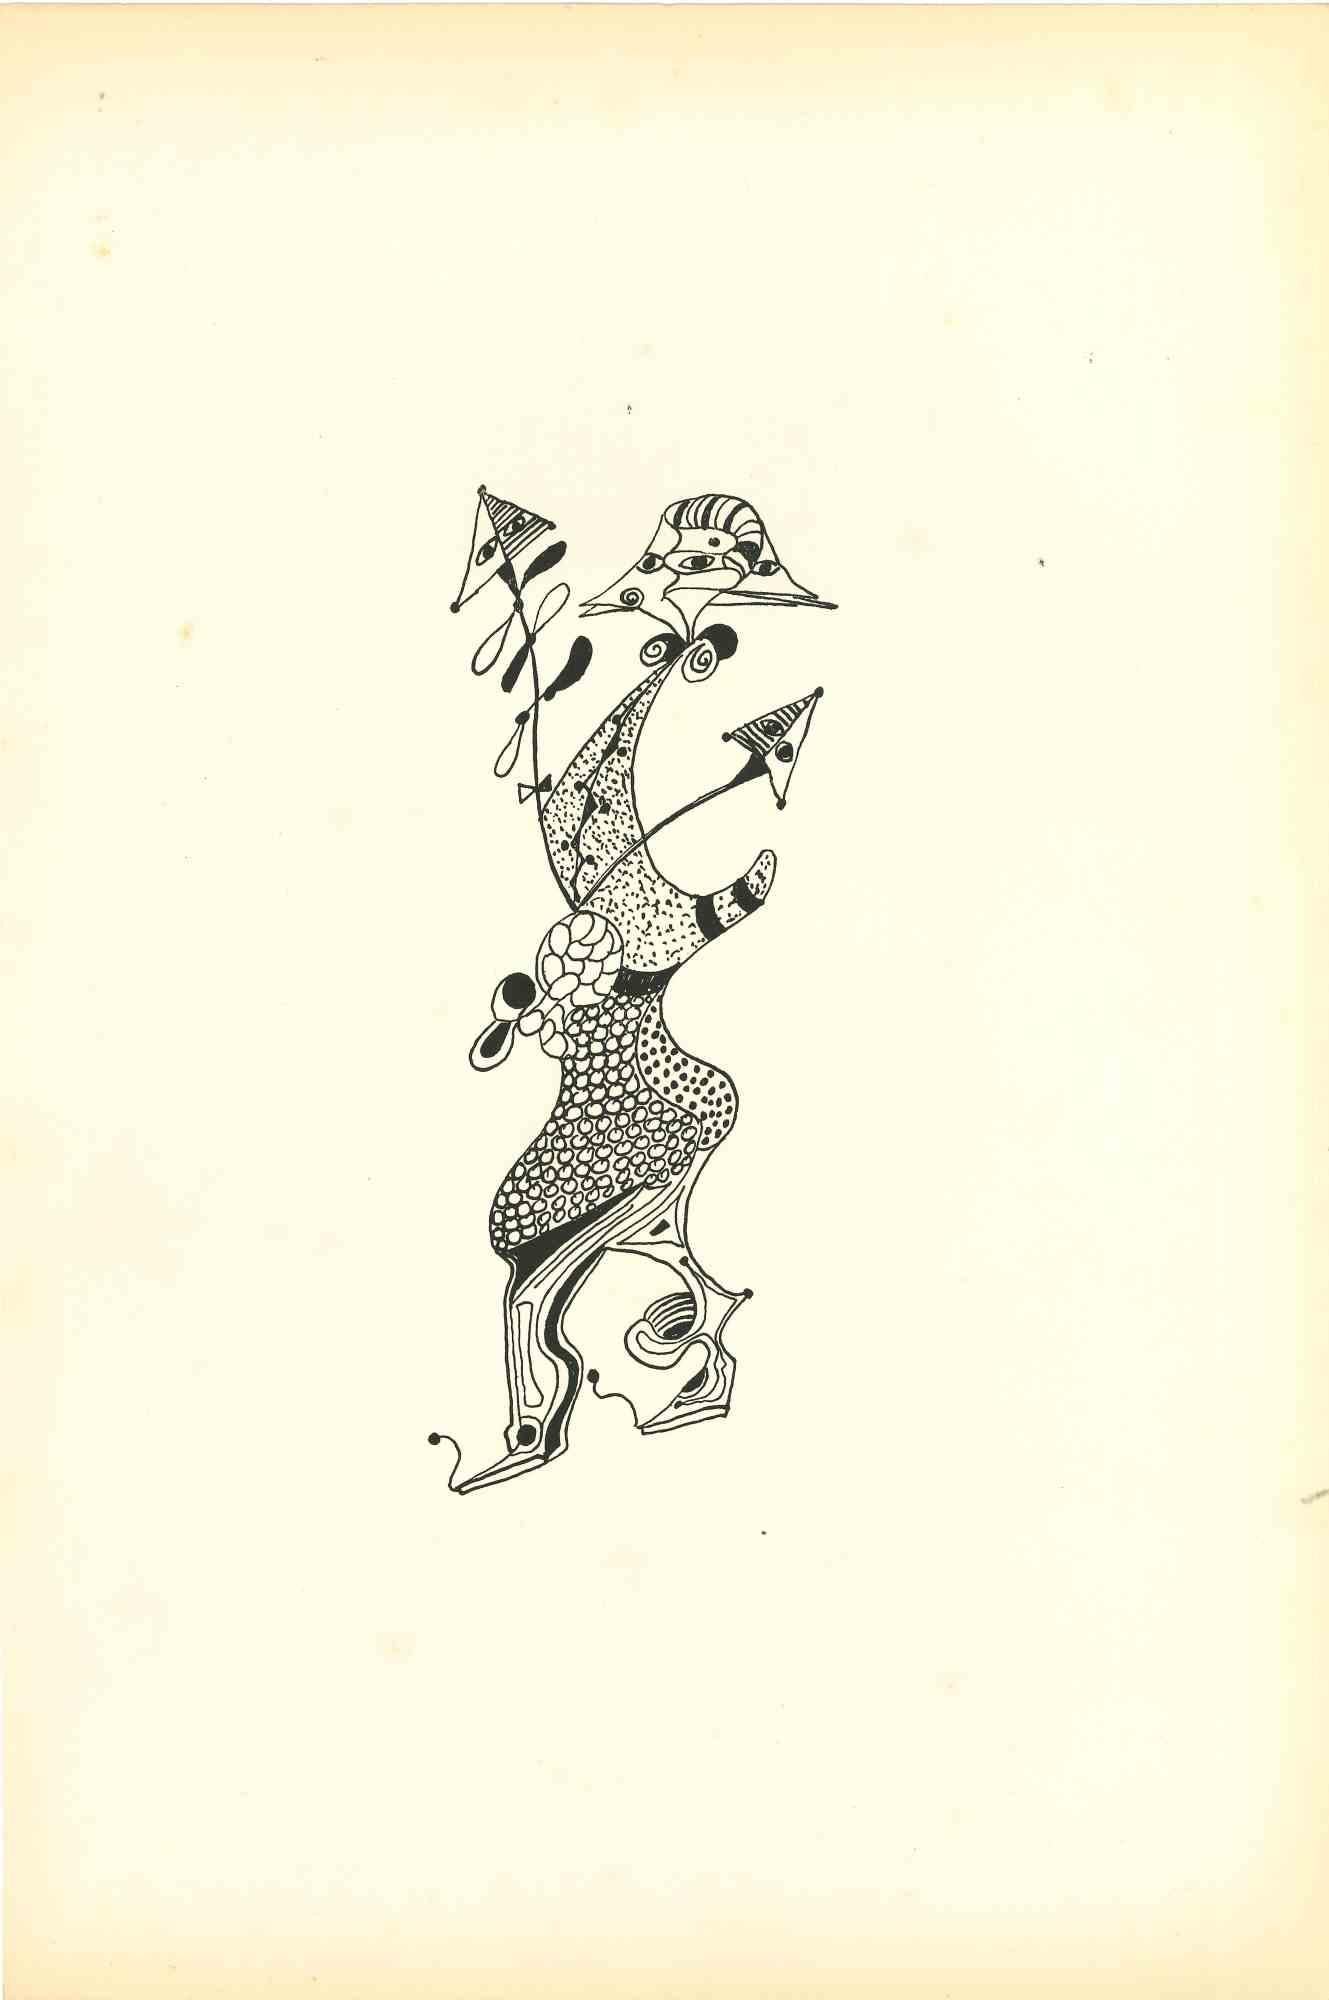 Composition de Diodora - Lithographie originale de Bruno Capacci - 1950